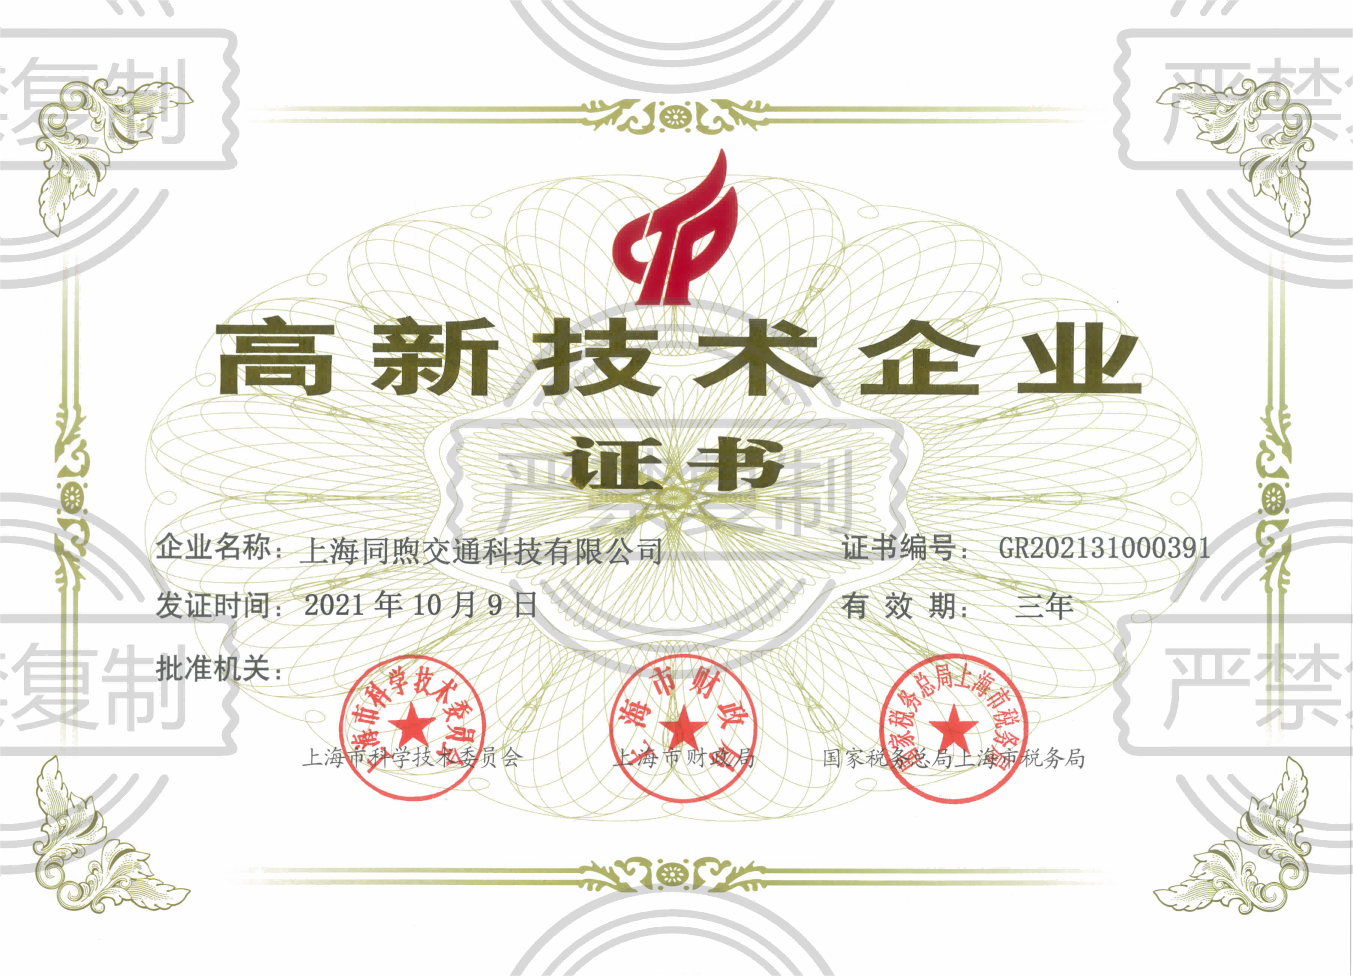 上海同煦交通科技有限公司獲高新技術企業認定